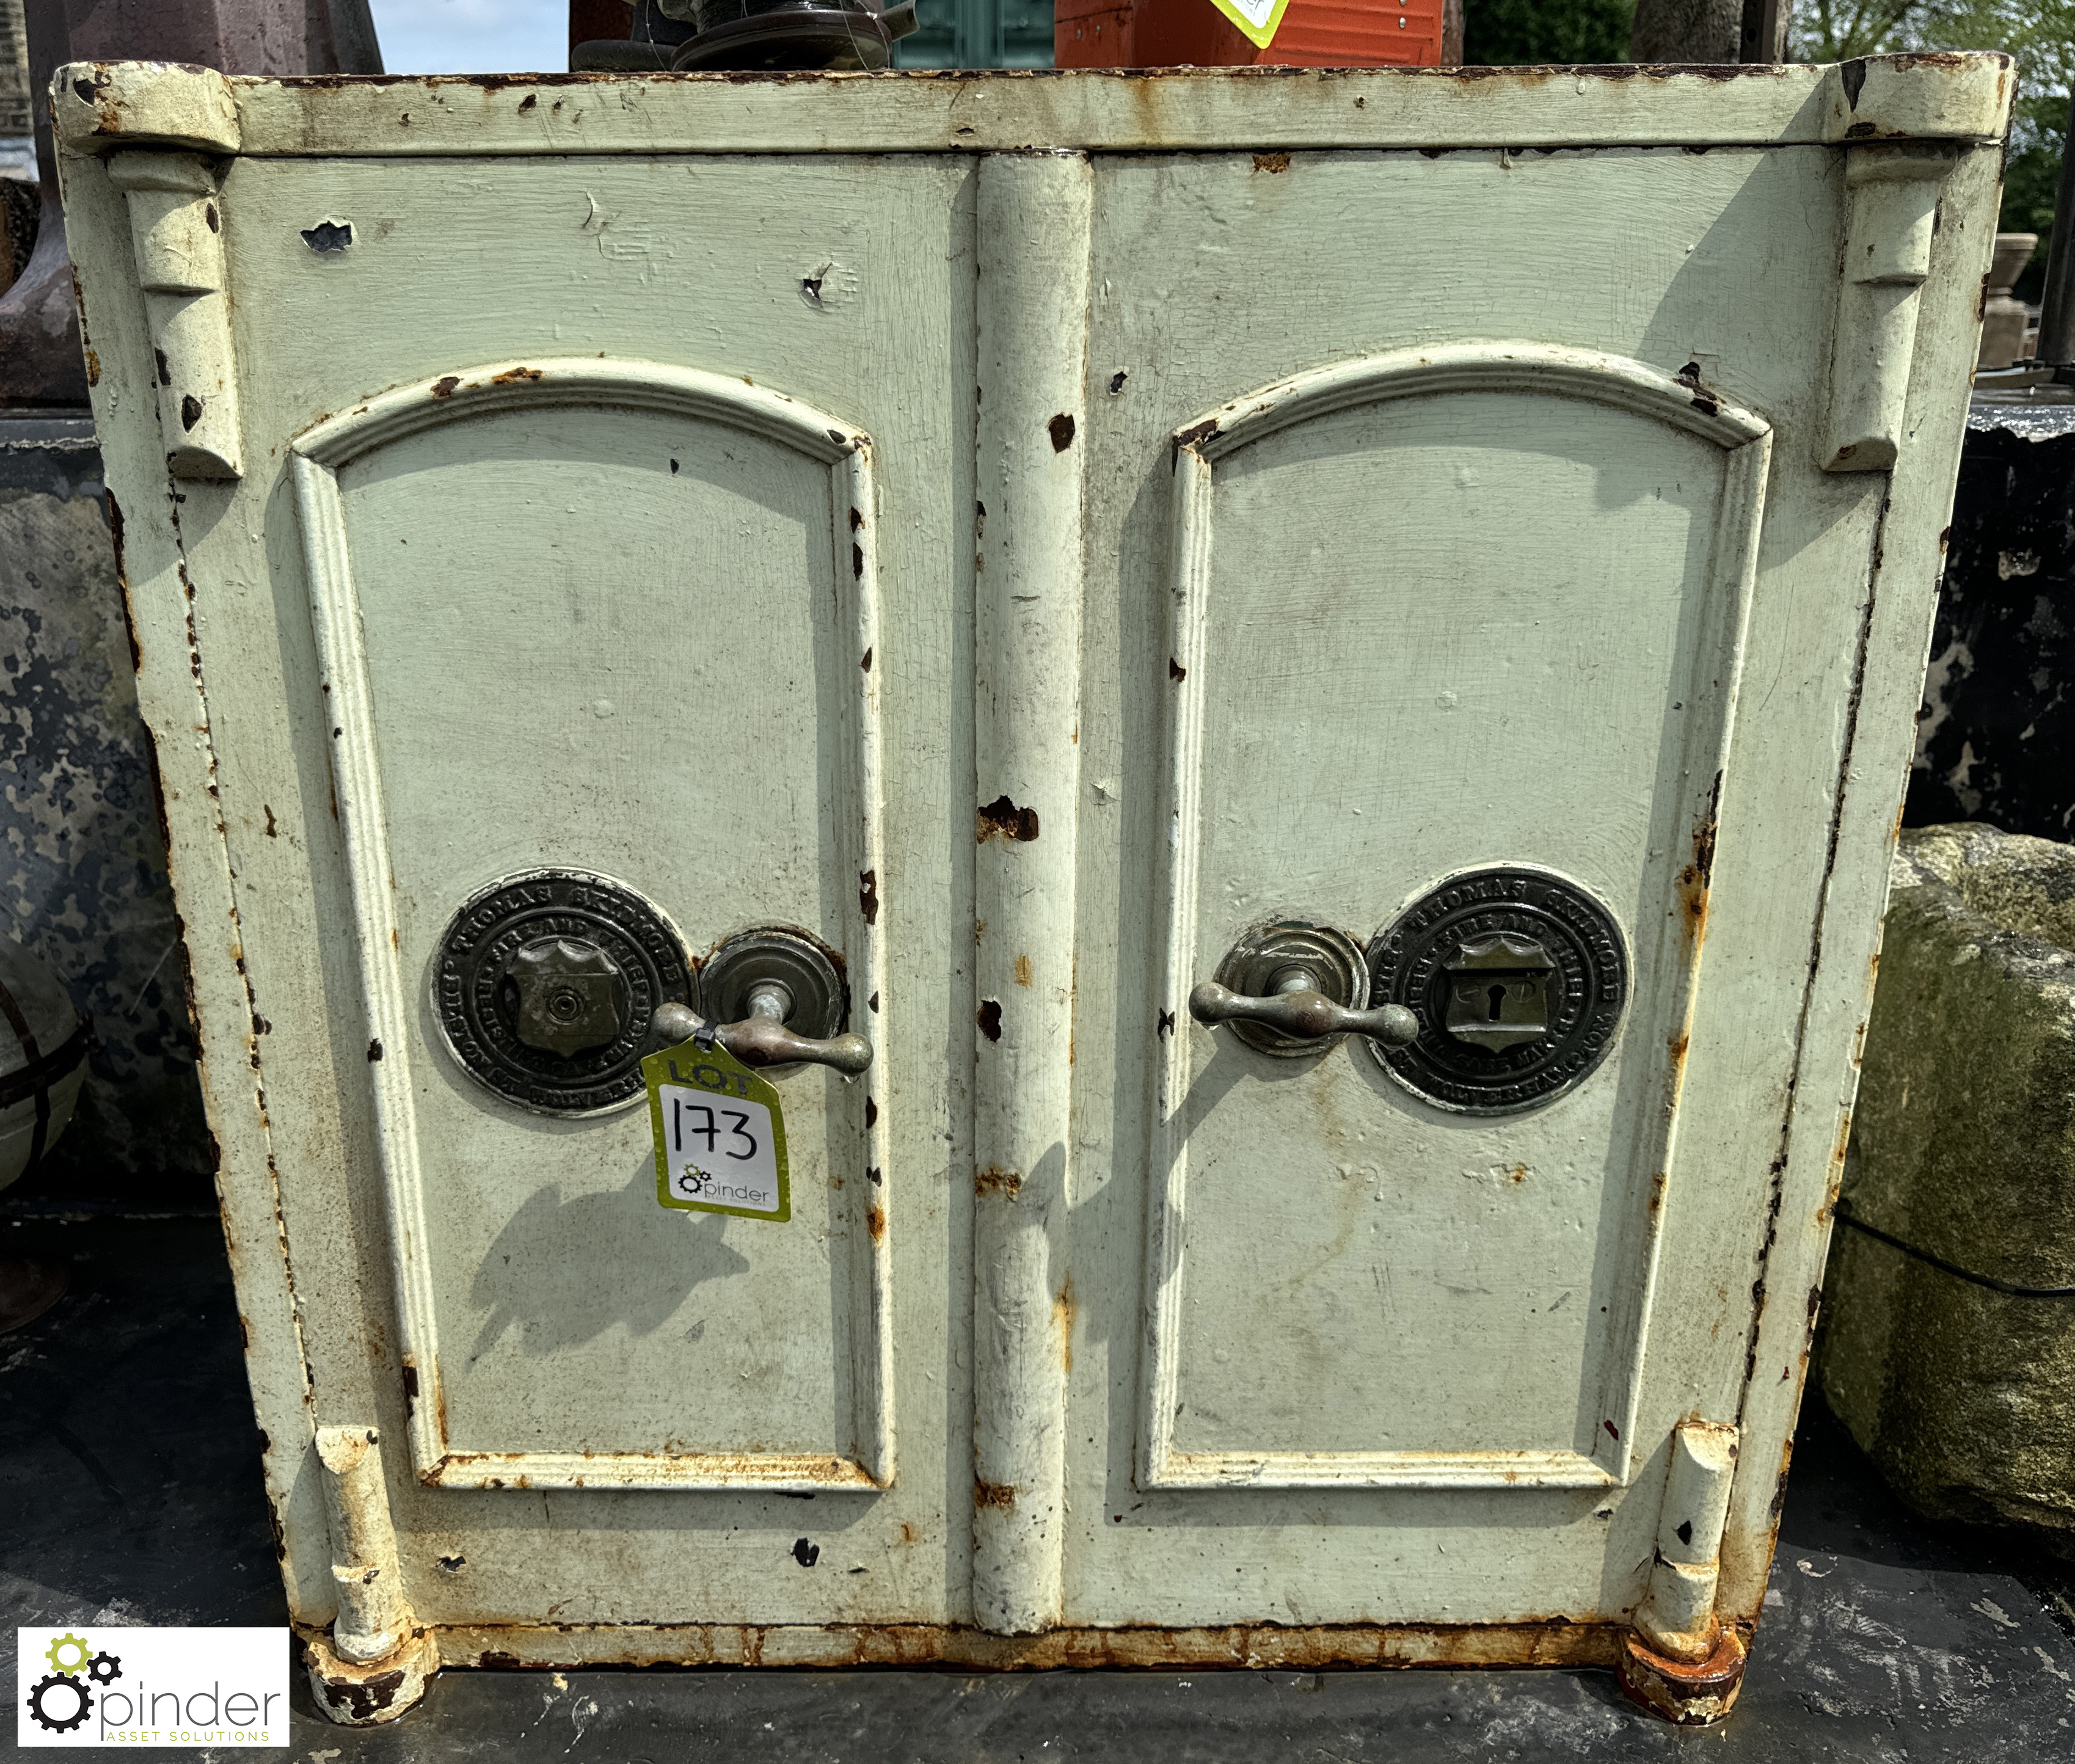 A Victorian double door Safe, with bronze handles and bronze maker’s plaque “Thomas Skidmore,